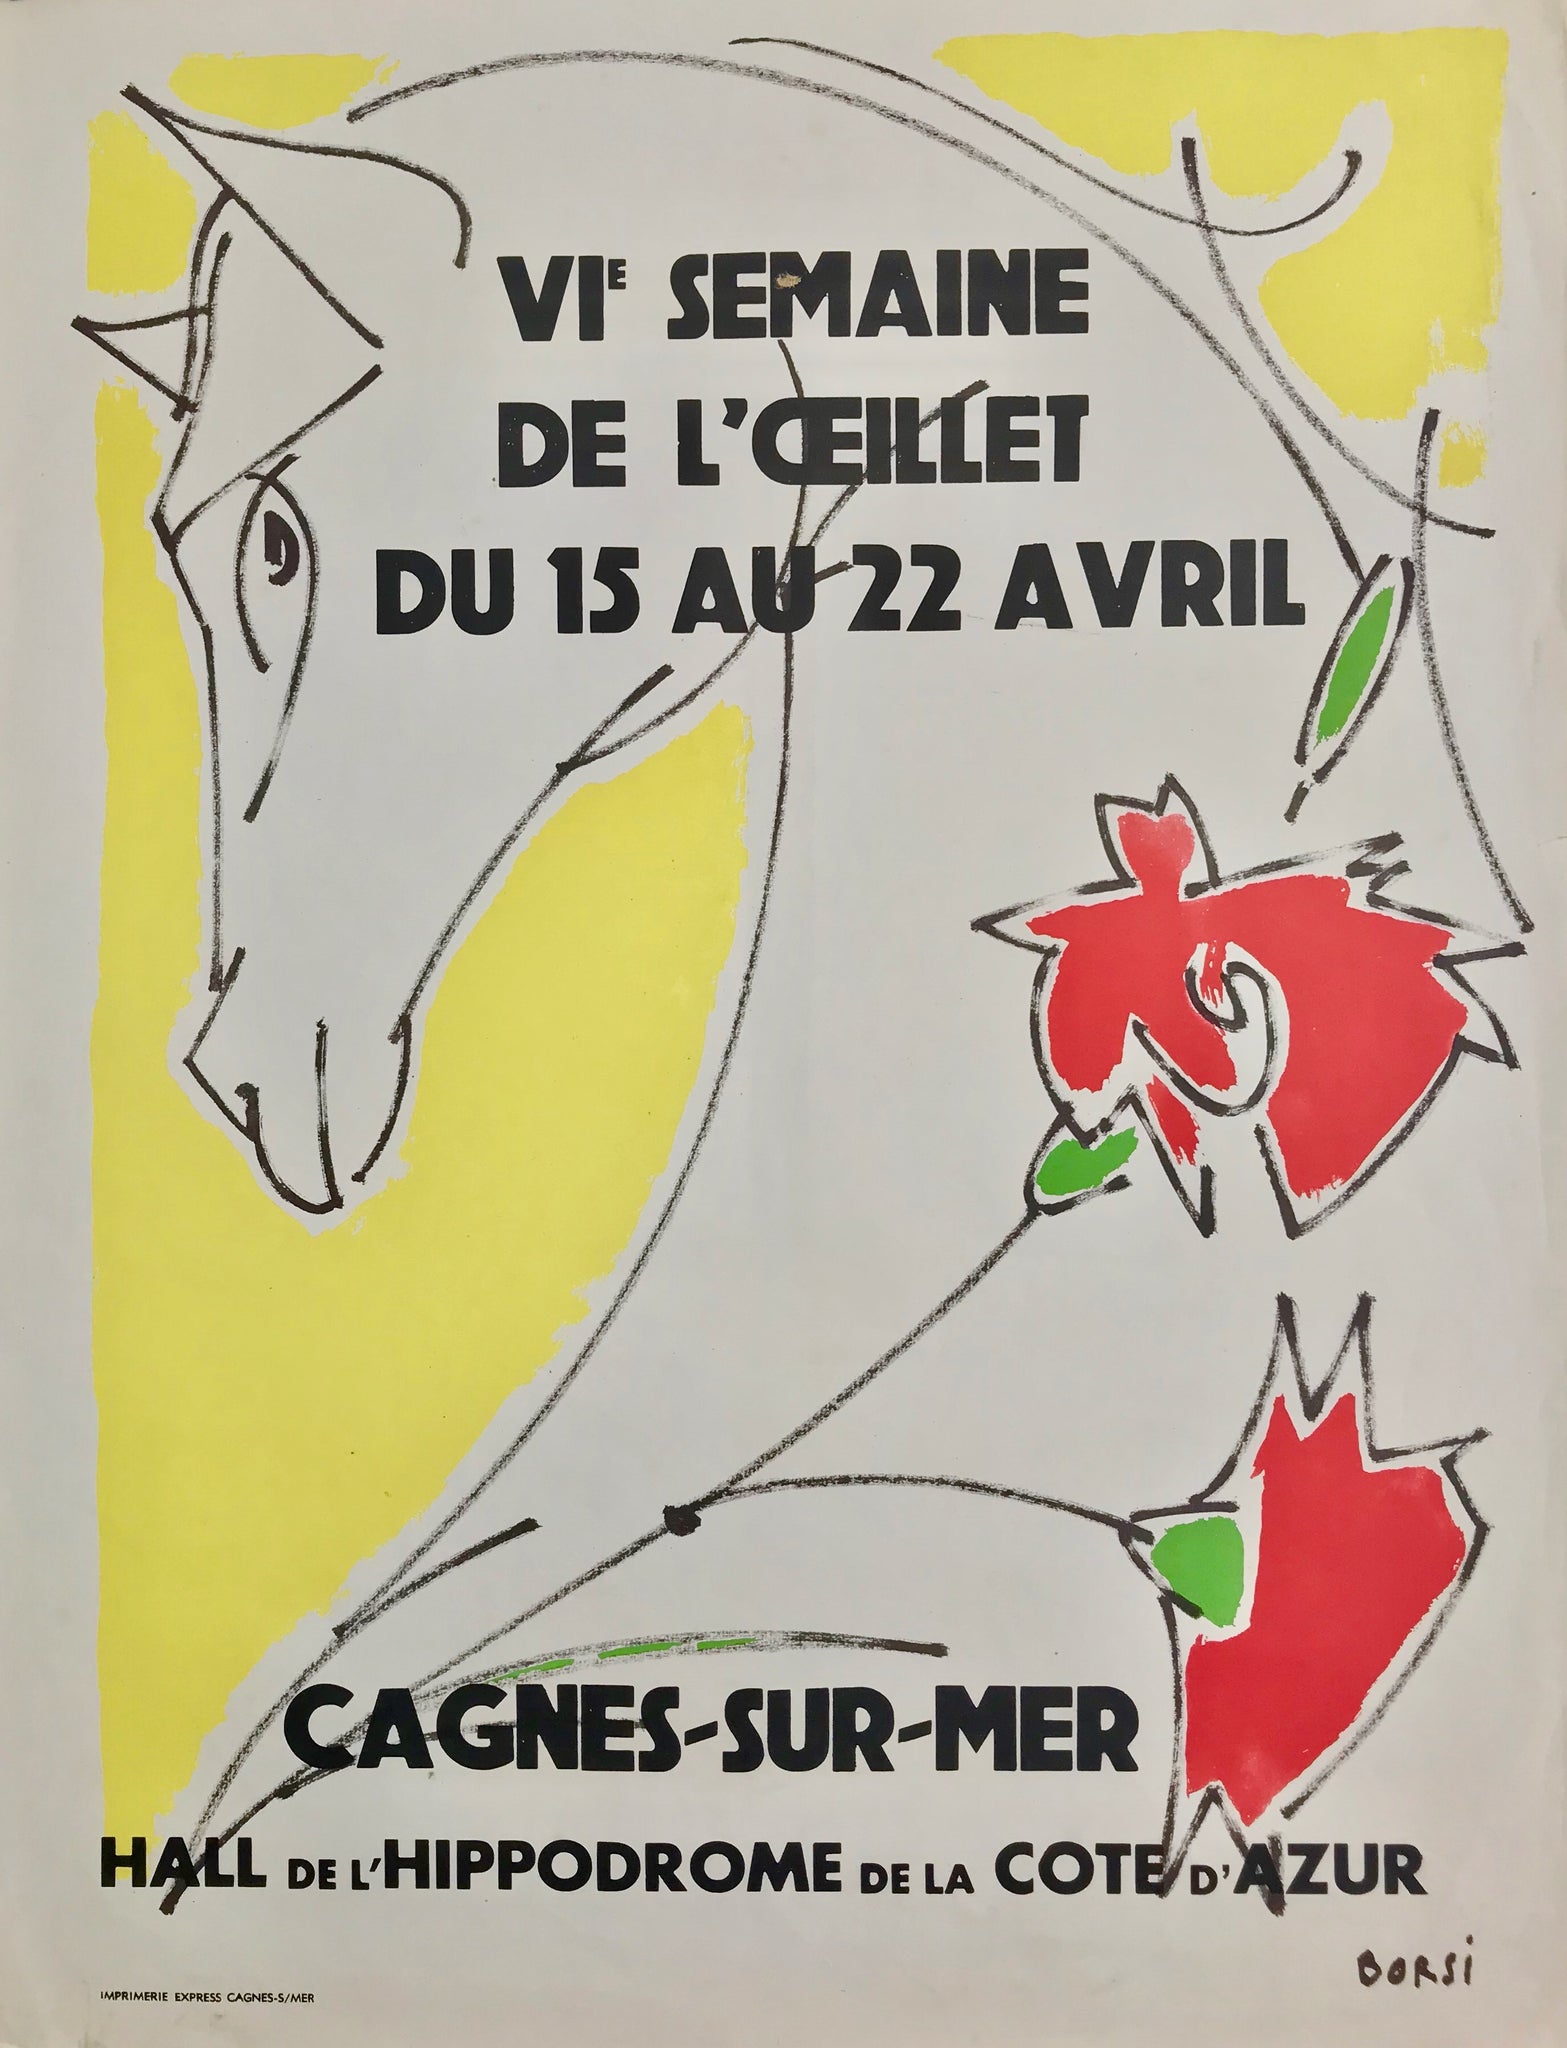 Affiche Ancienne V eme semaine de l'oeillet Cagnes-Sur-Mer Par Borsi